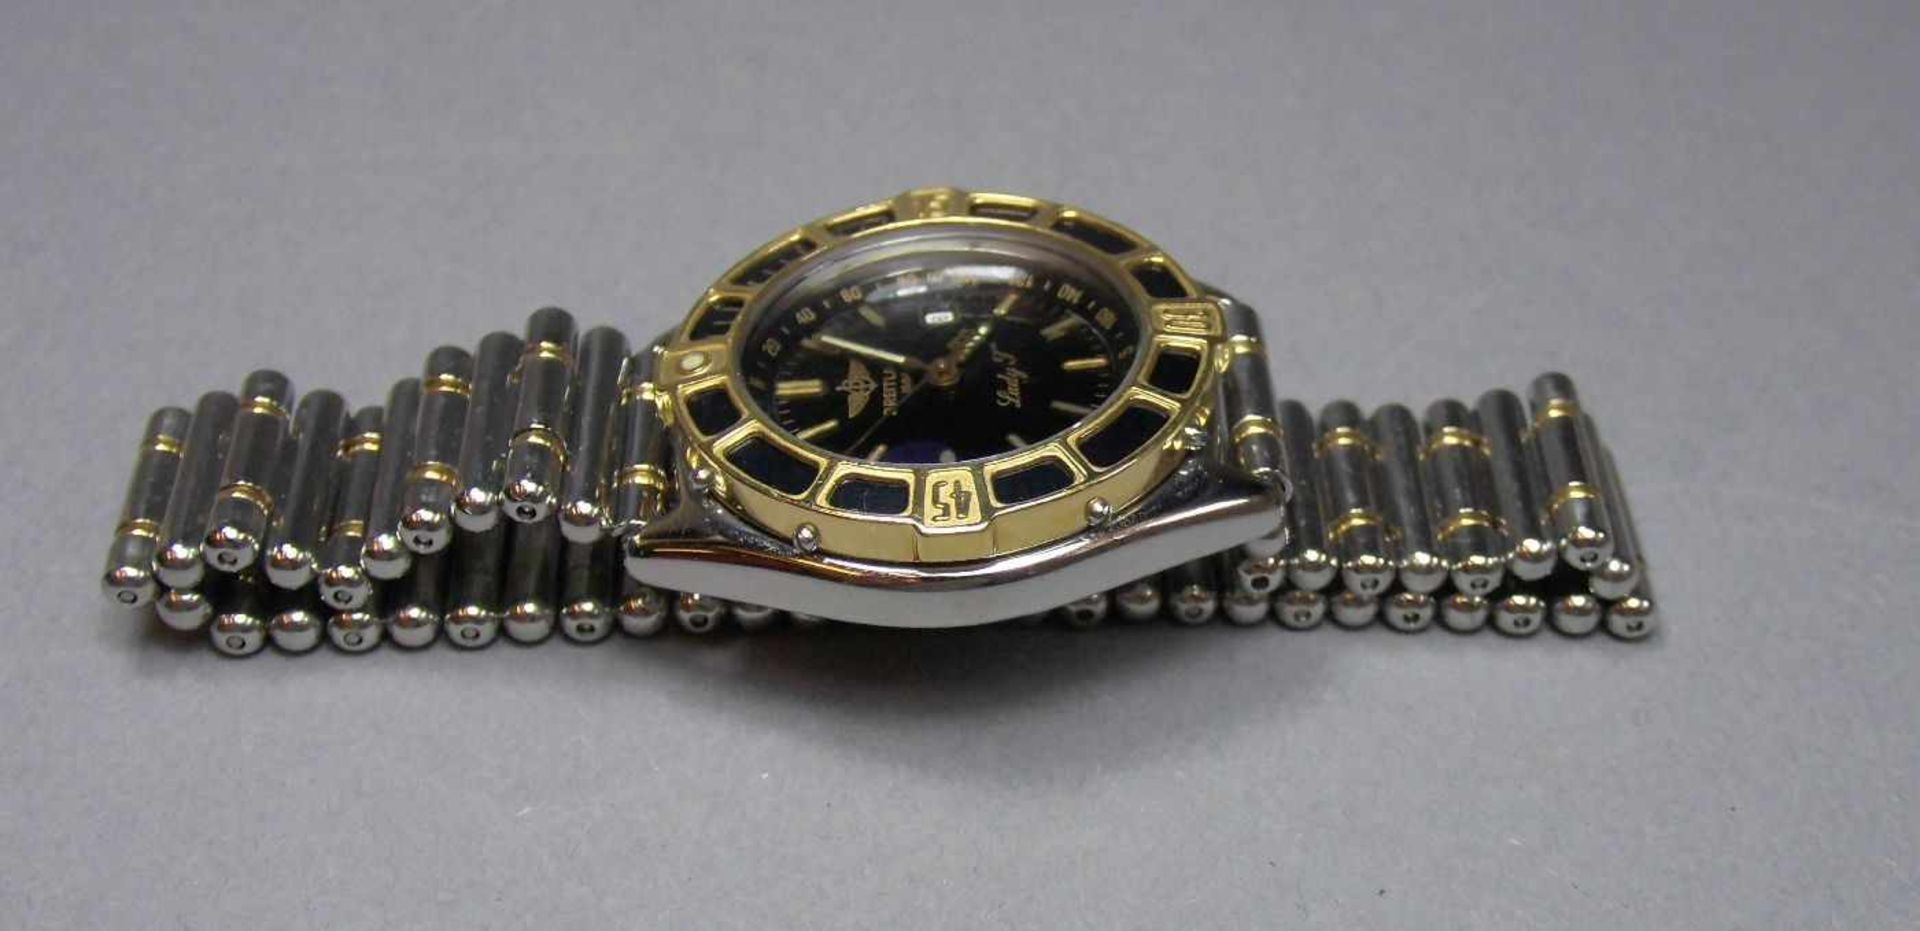 BREITLING "LADY J" ARMBANDUHR / wristwatch, Schweiz. Verschraubtes Stahlgehäuse mit drehbarer - Image 6 of 11